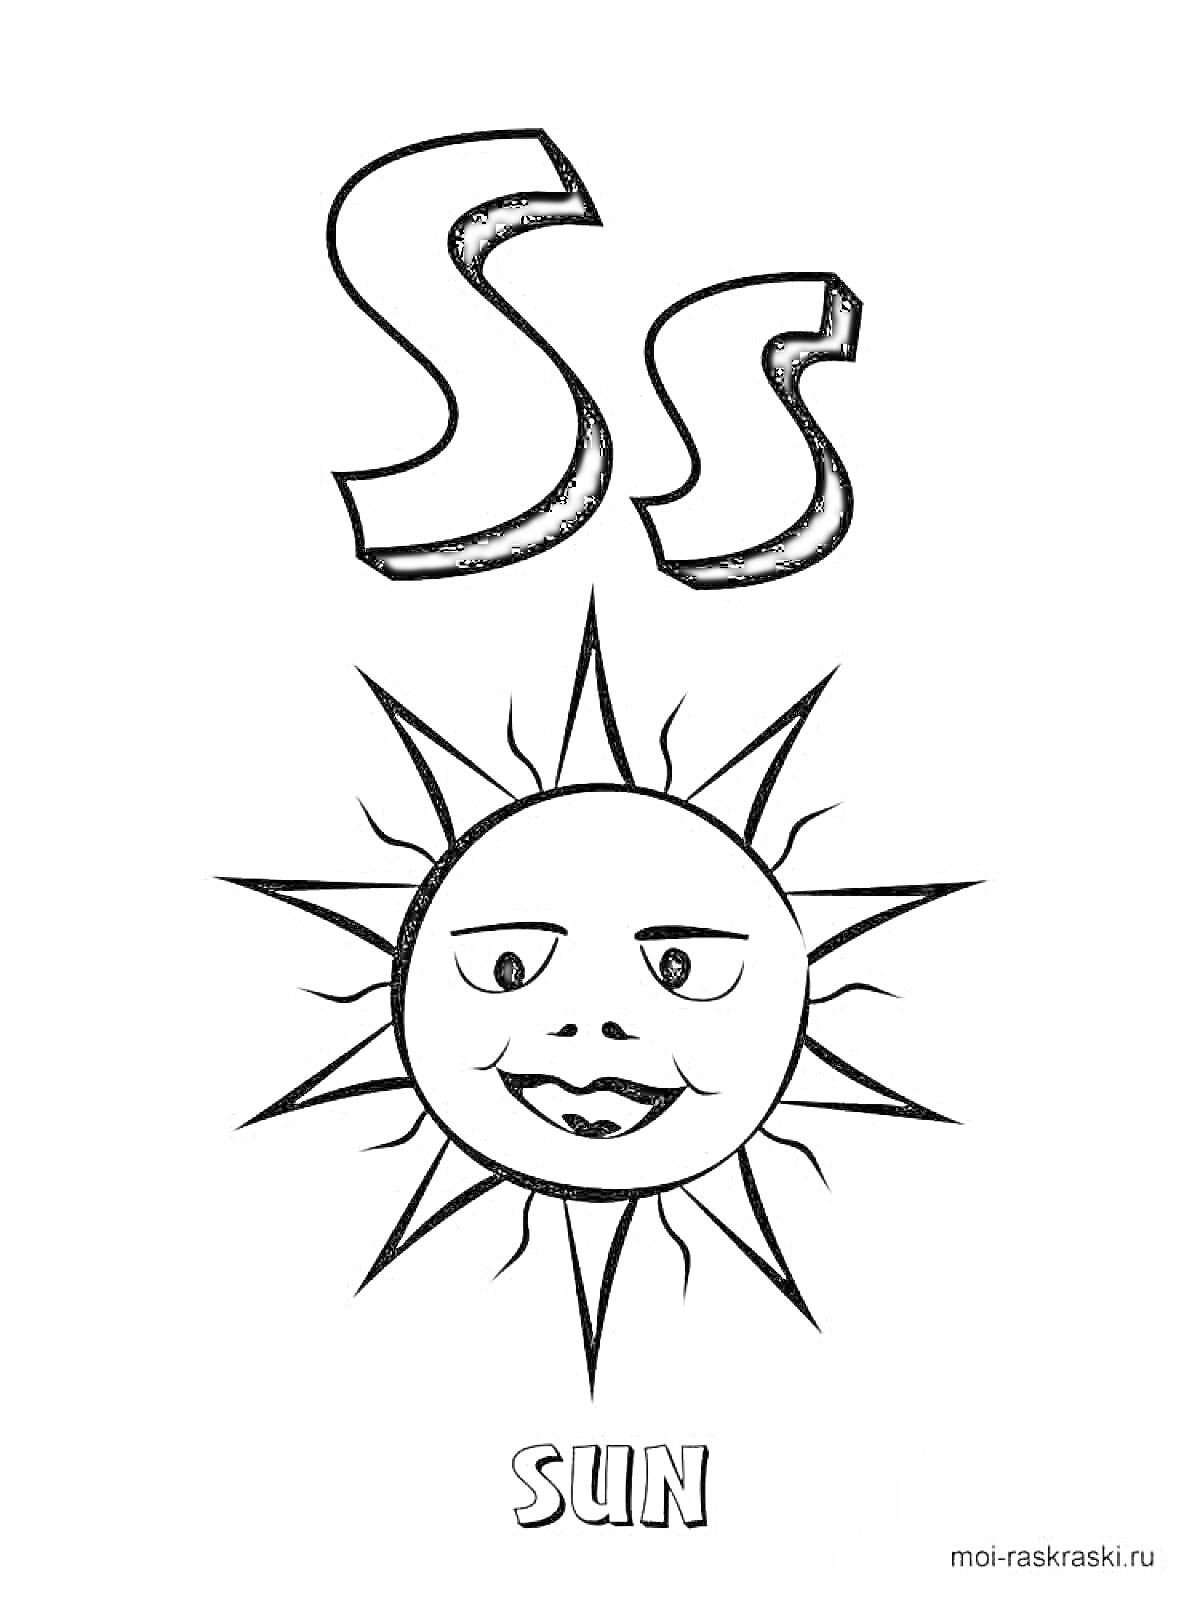 Раскраска Буква S с изображением солнца и надписью SUN